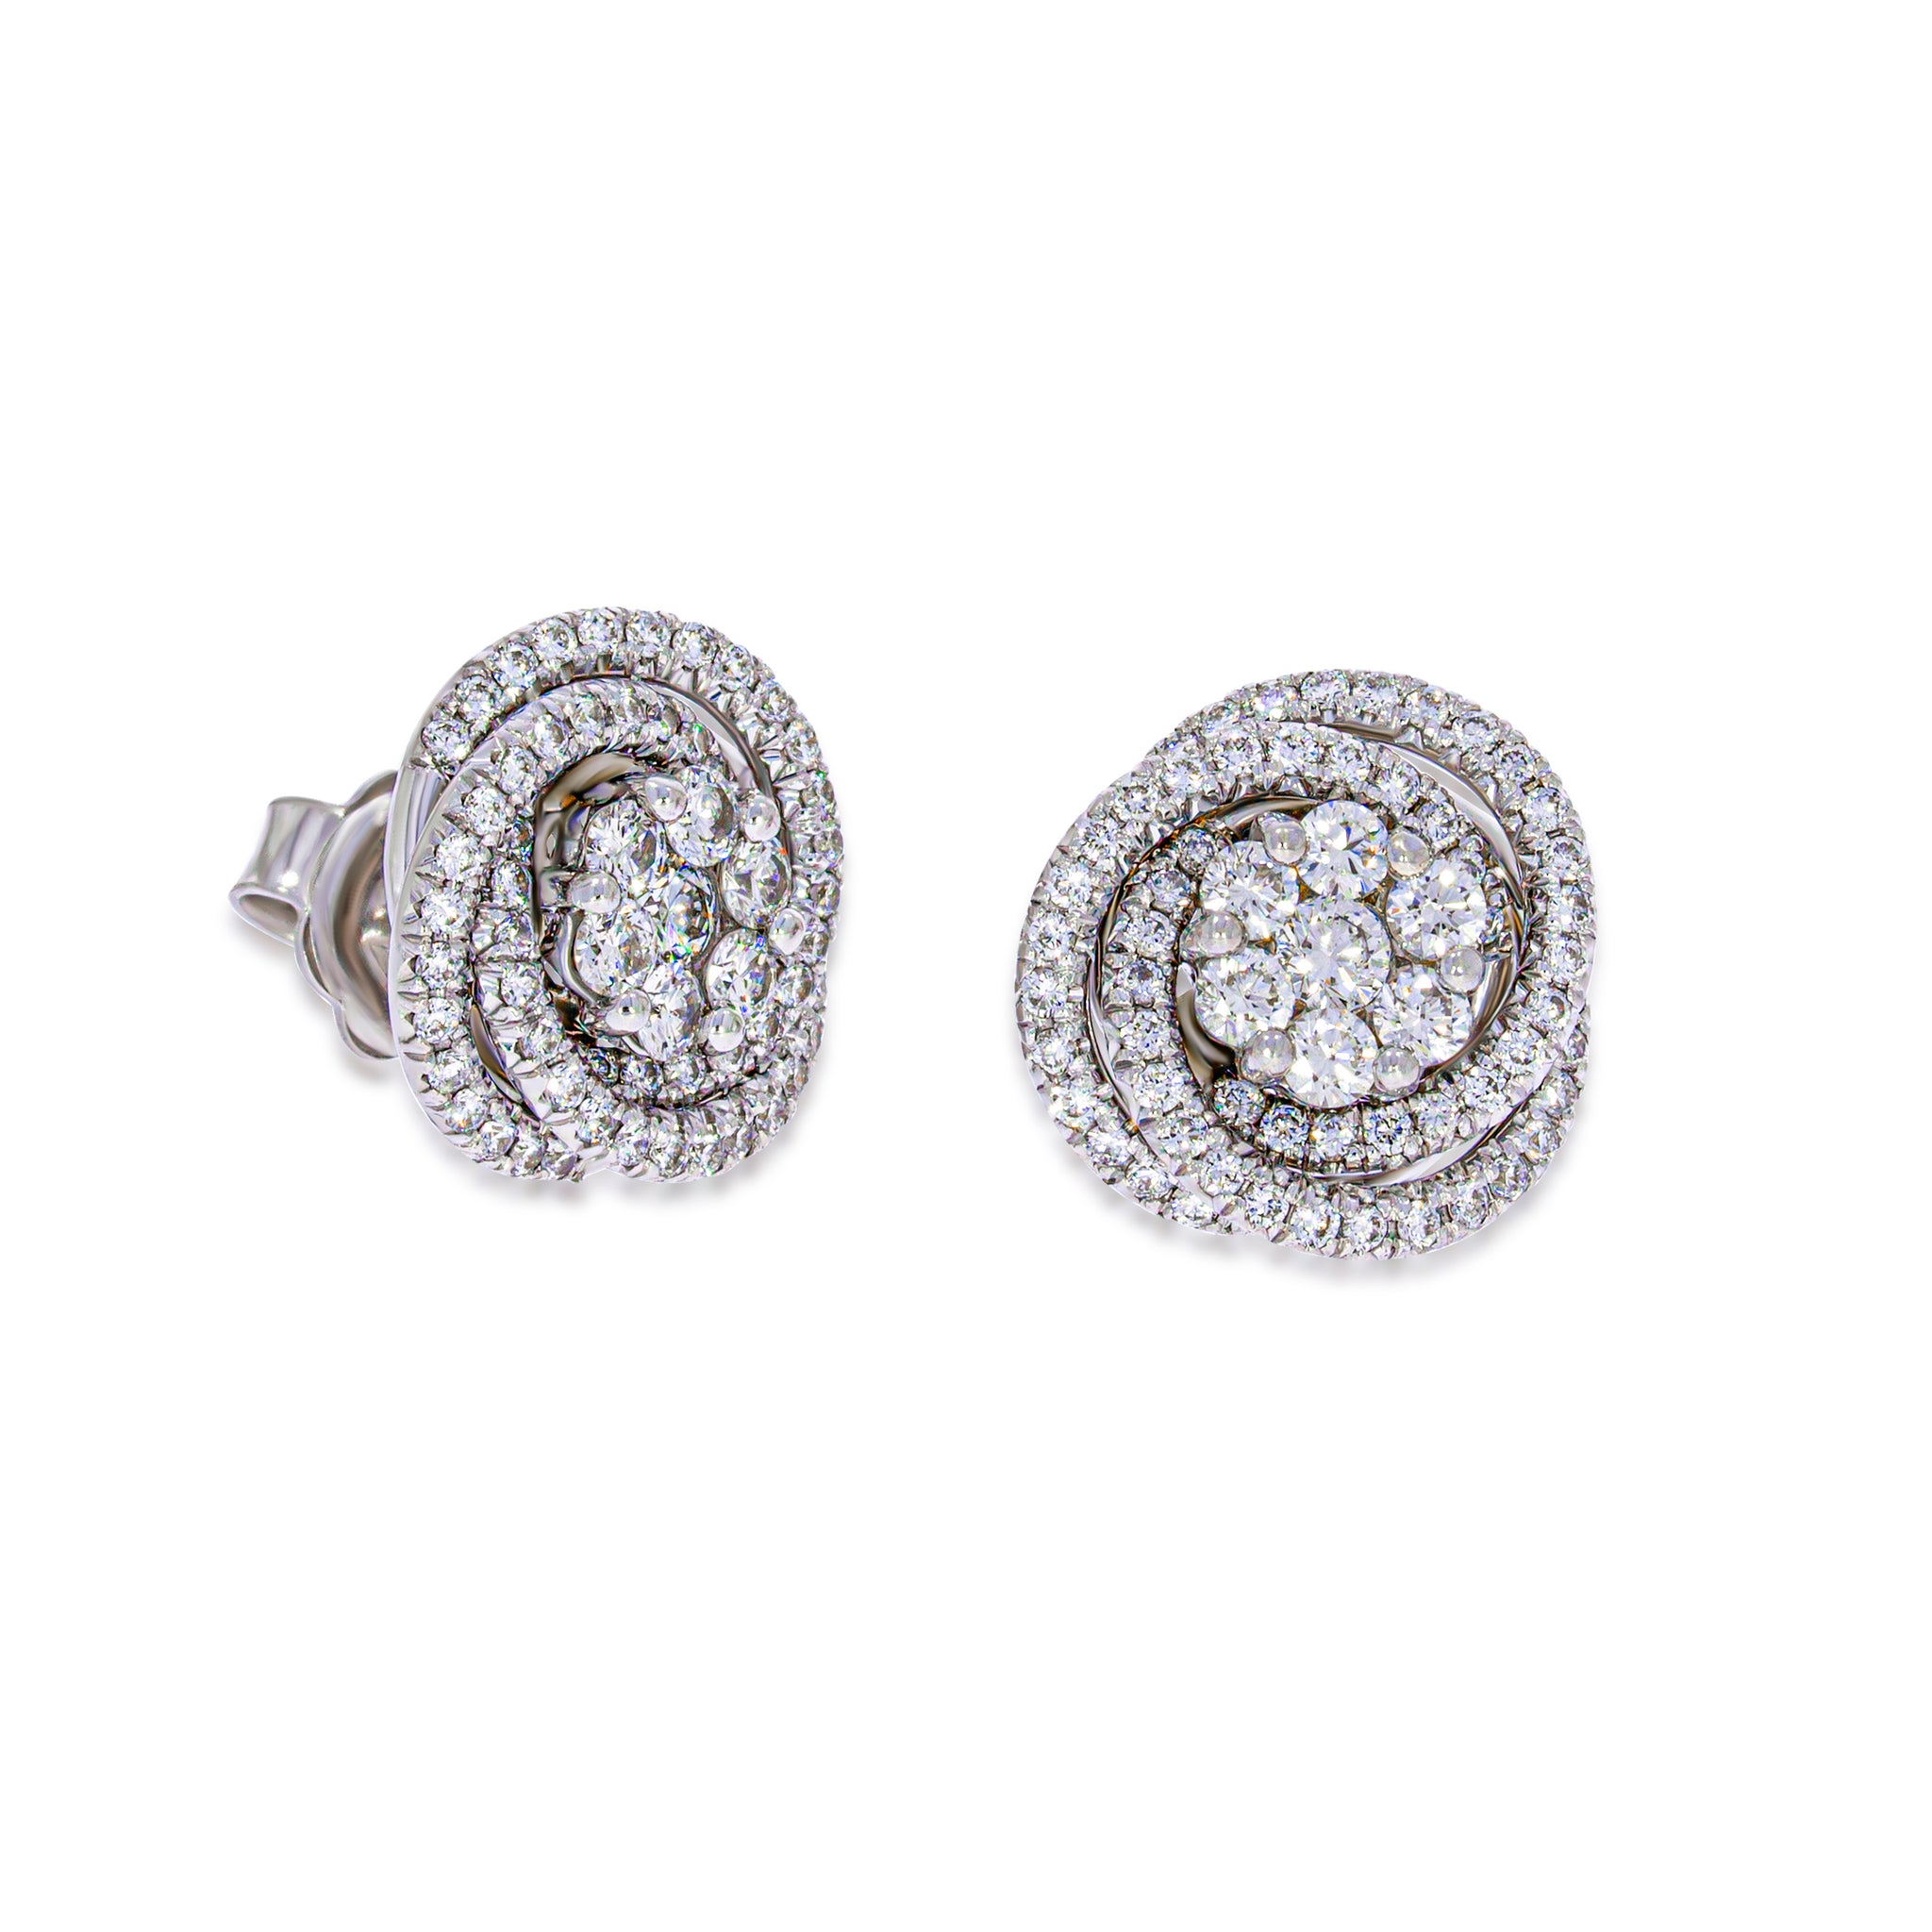 Buy American Diamond Earrings | AD Earrings - Nithilah